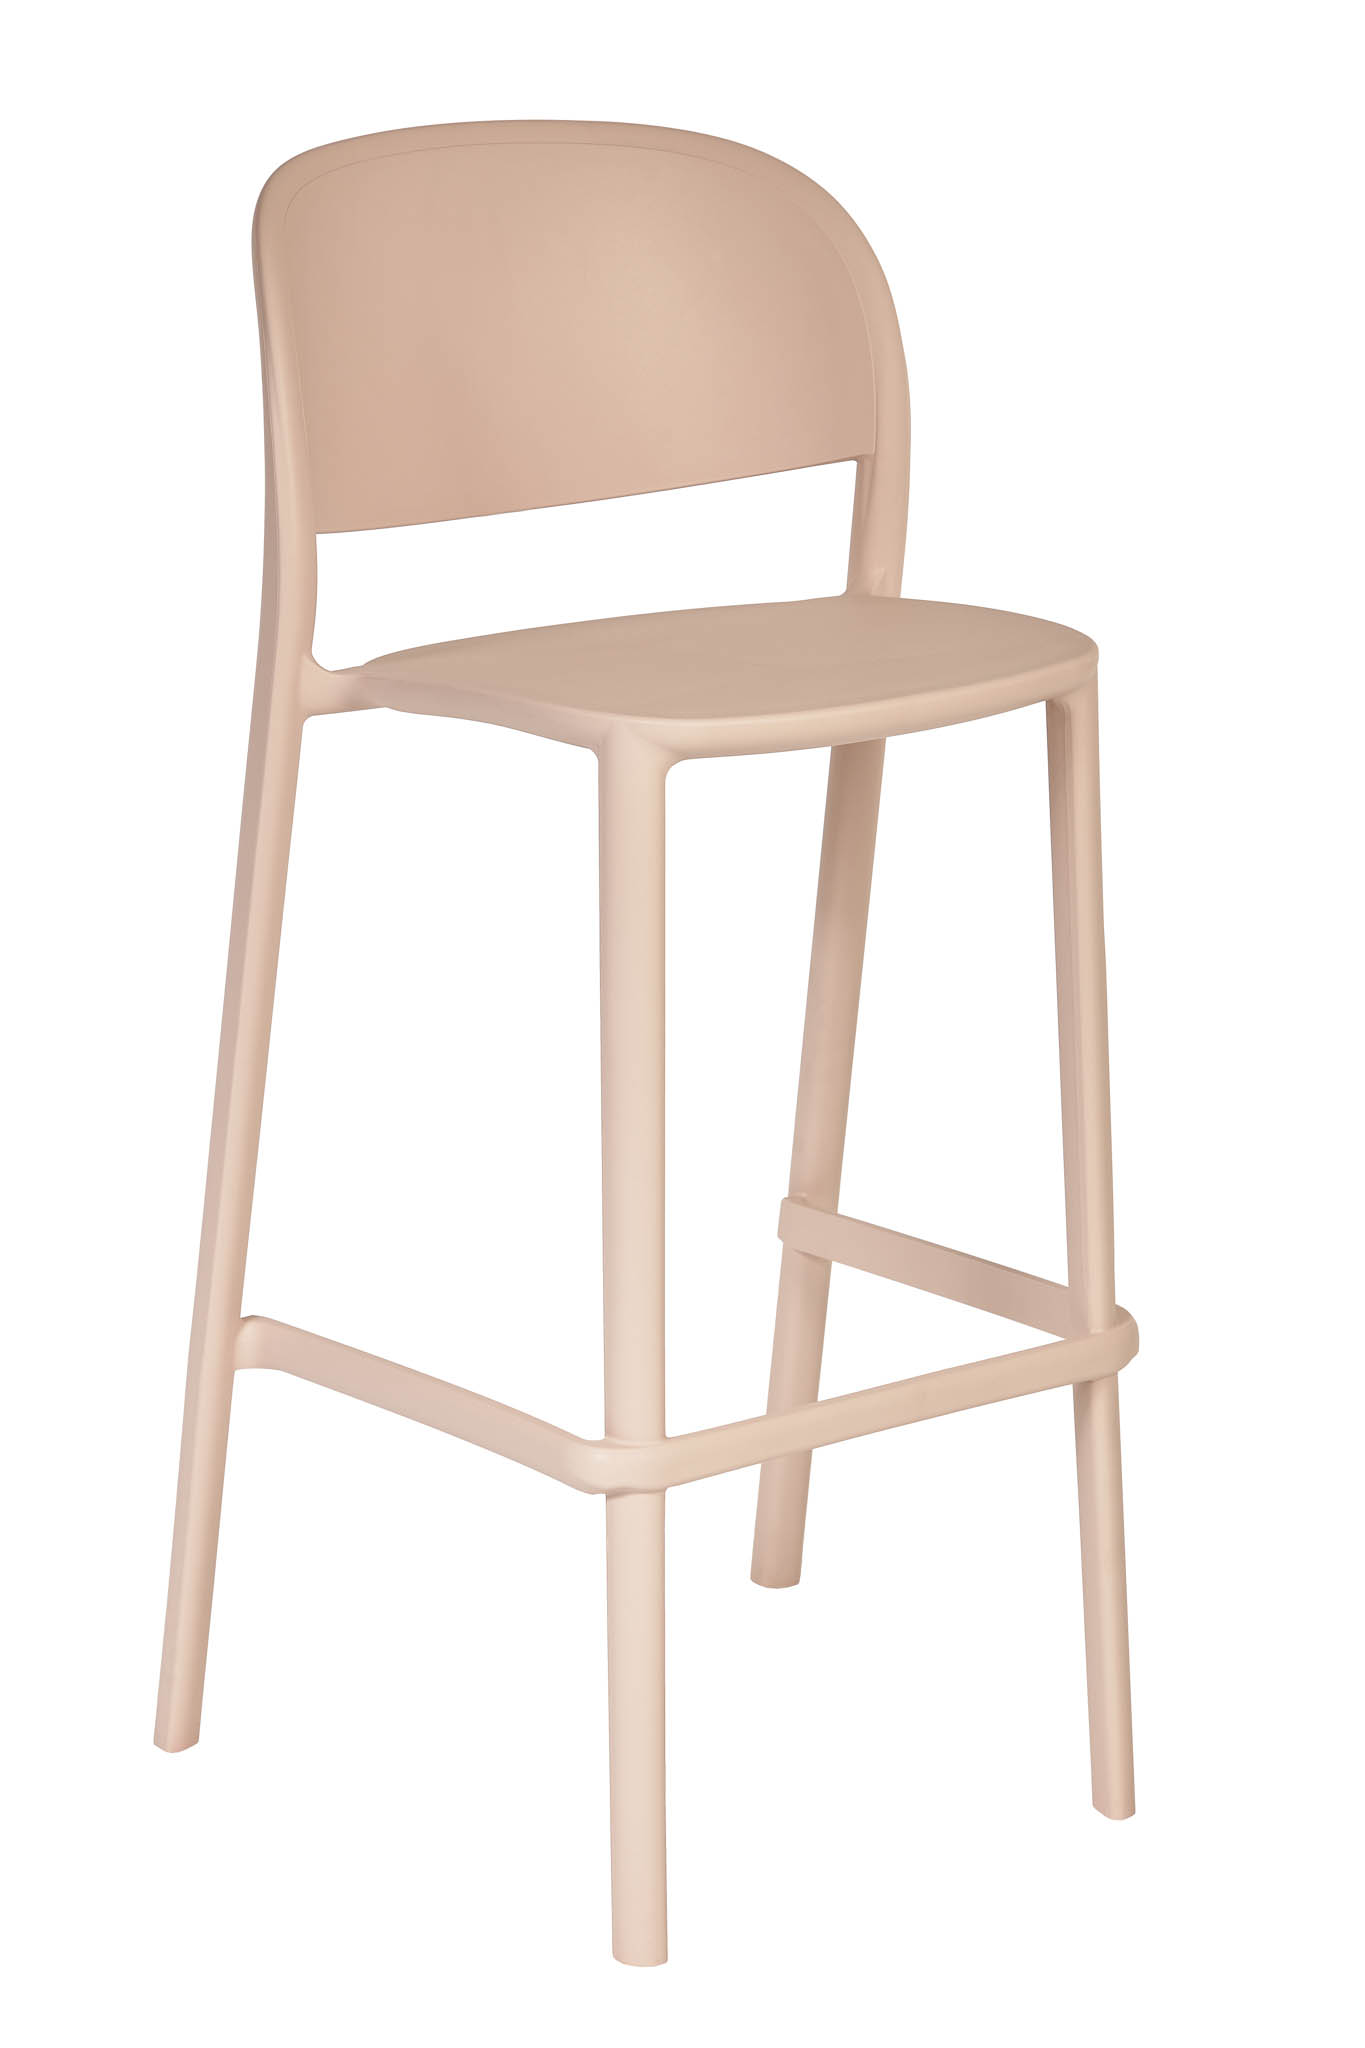 AD hotelska oprema Barska stolica 01 - Soft pink boje slika proizvoda